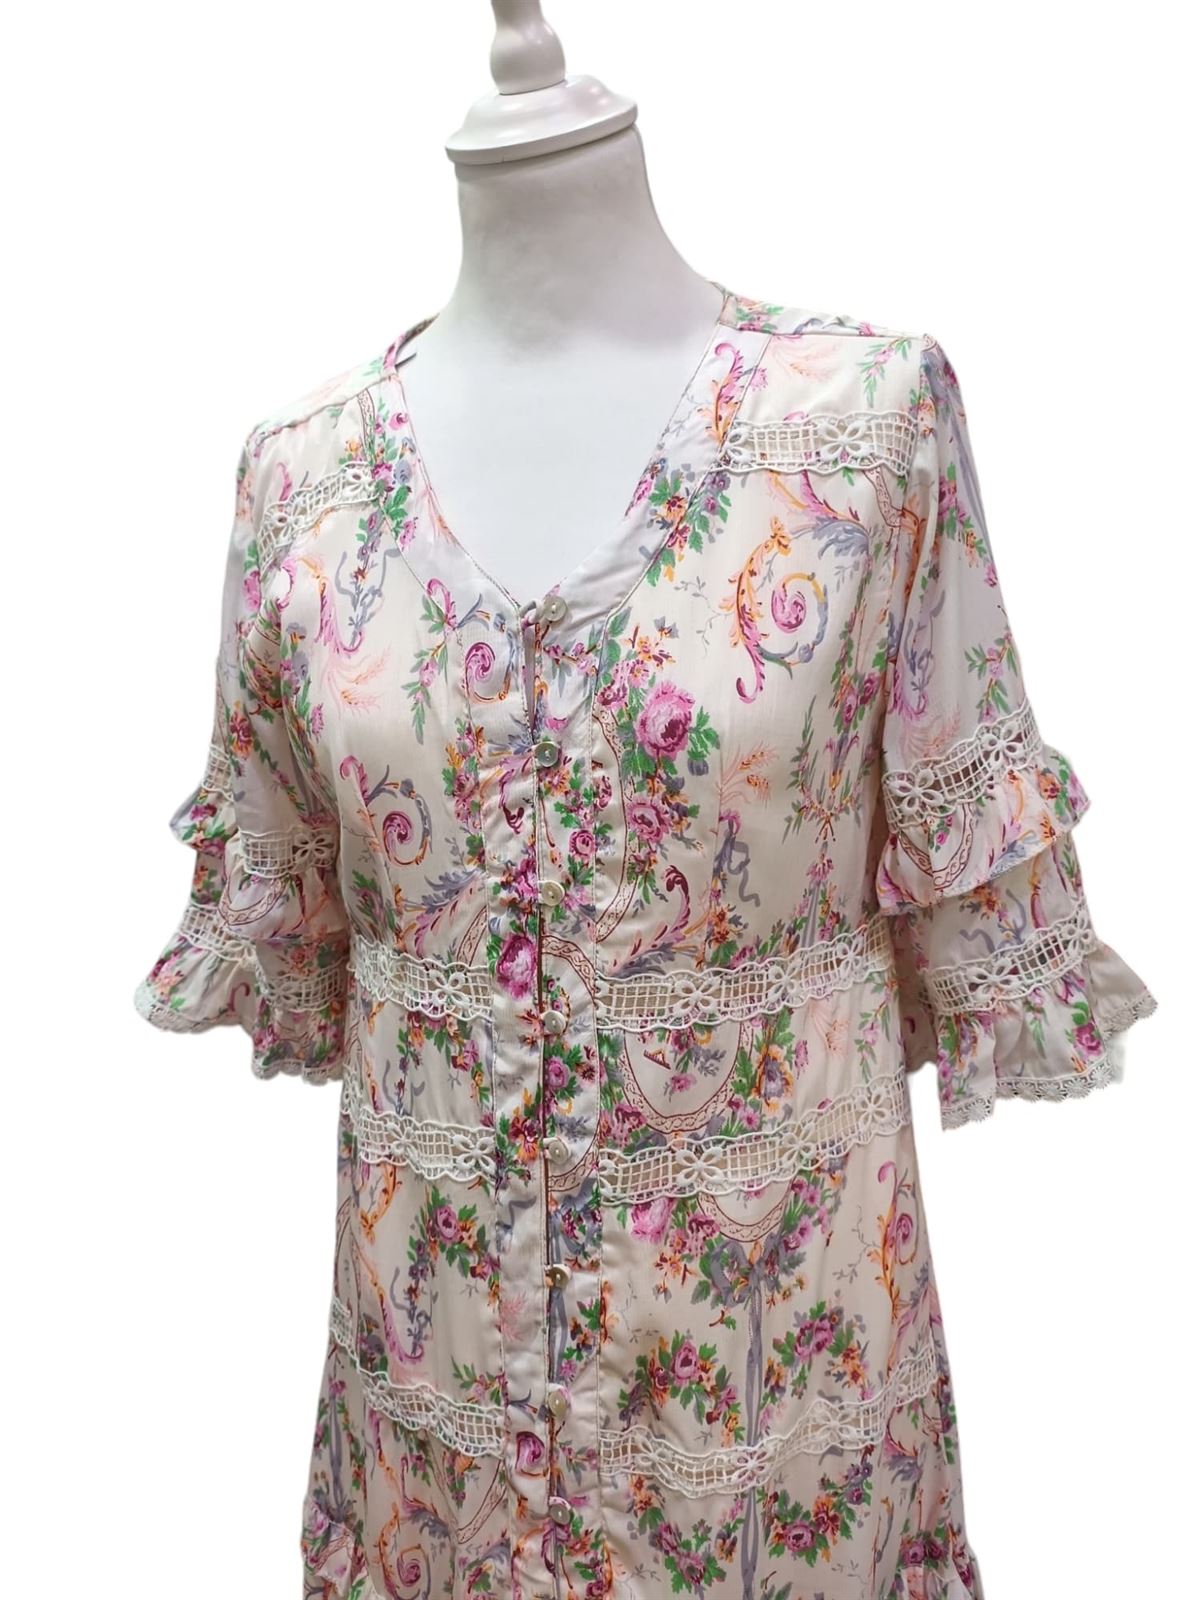 Vestido original largo en seda de verano con botones - Imagen 2